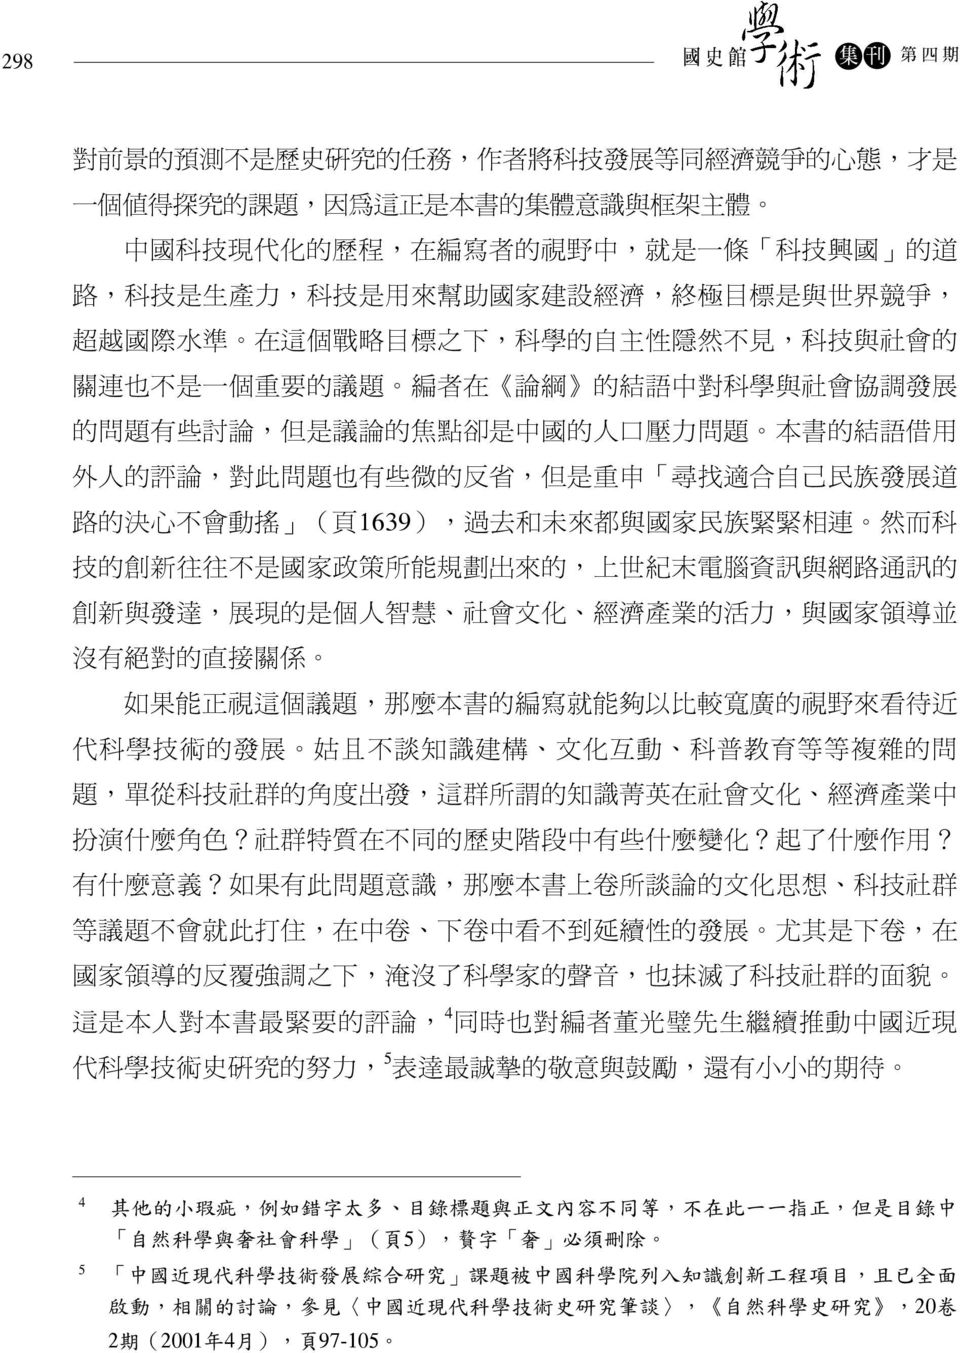 討 論, 但 是 議 論 的 焦 點 卻 是 中 國 的 人 口 壓 力 問 題 本 書 的 結 語 借 用 外 人 的 評 論, 對 此 問 題 也 有 些 微 的 反 省, 但 是 重 申 尋 找 適 合 自 己 民 族 發 展 道 路 的 決 心 不 會 動 搖 ( 頁 1639), 過 去 和 未 來 都 與 國 家 民 族 緊 緊 相 連 然 而 科 技 的 創 新 往 往 不 是 國